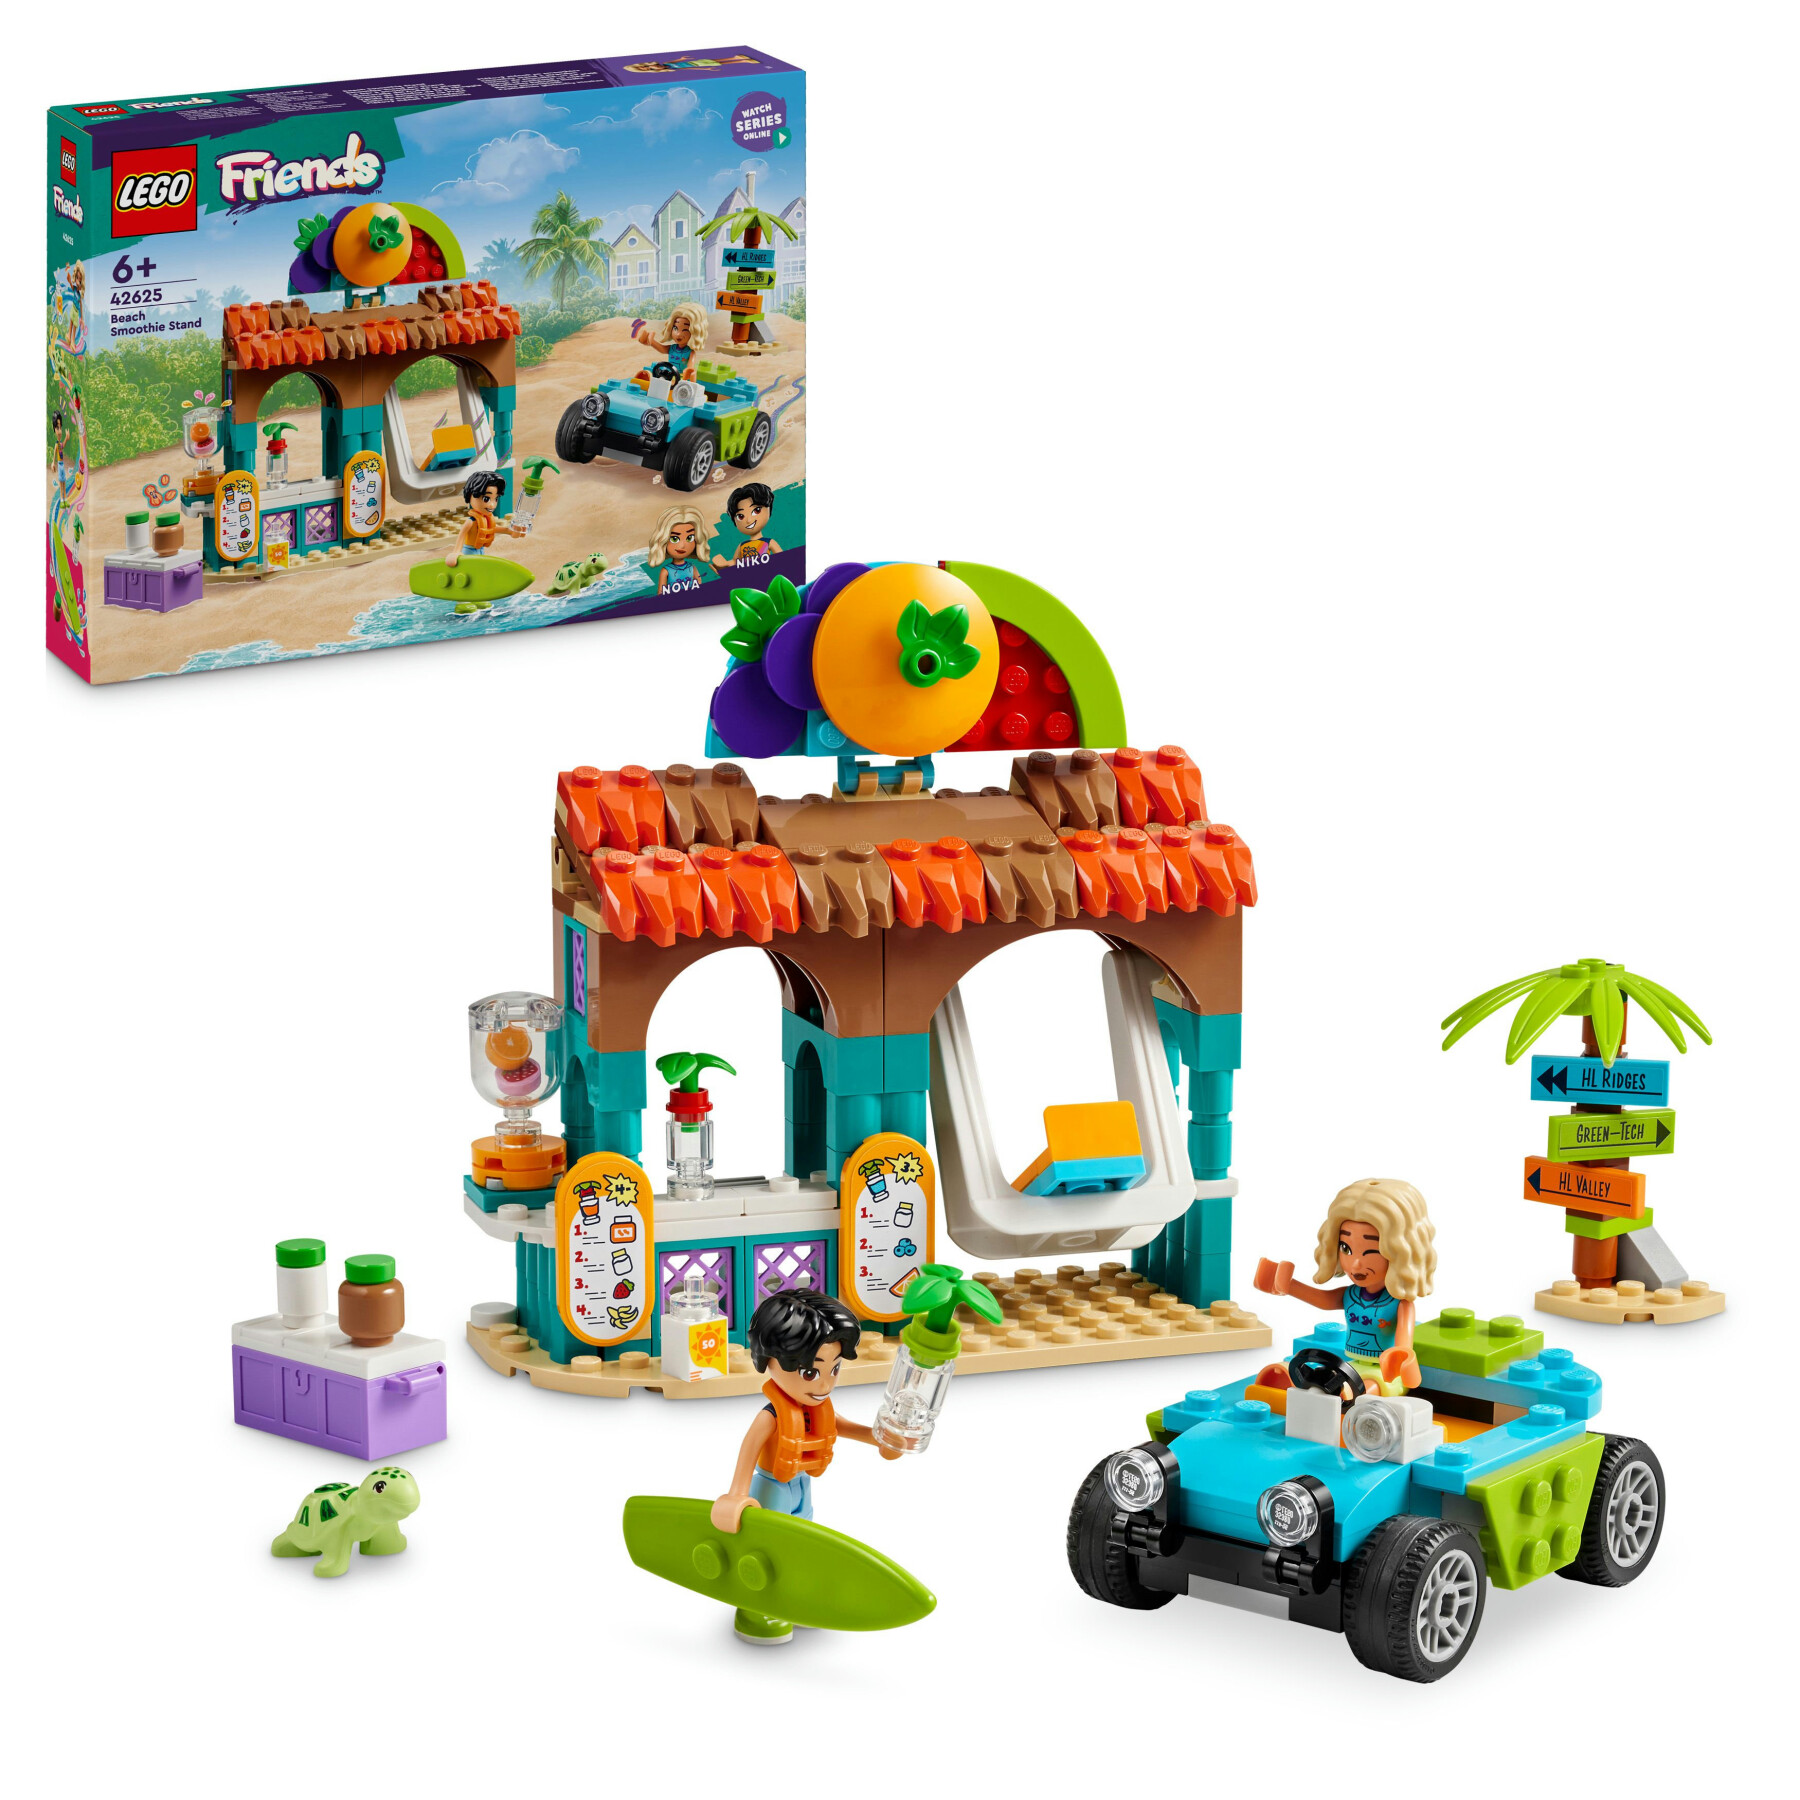 Lego friends 42625 bancarella dei frullati sulla spiaggia, giochi per bambini 6+ con 2 mini bamboline, buggy e cibo giocattolo - LEGO FRIENDS